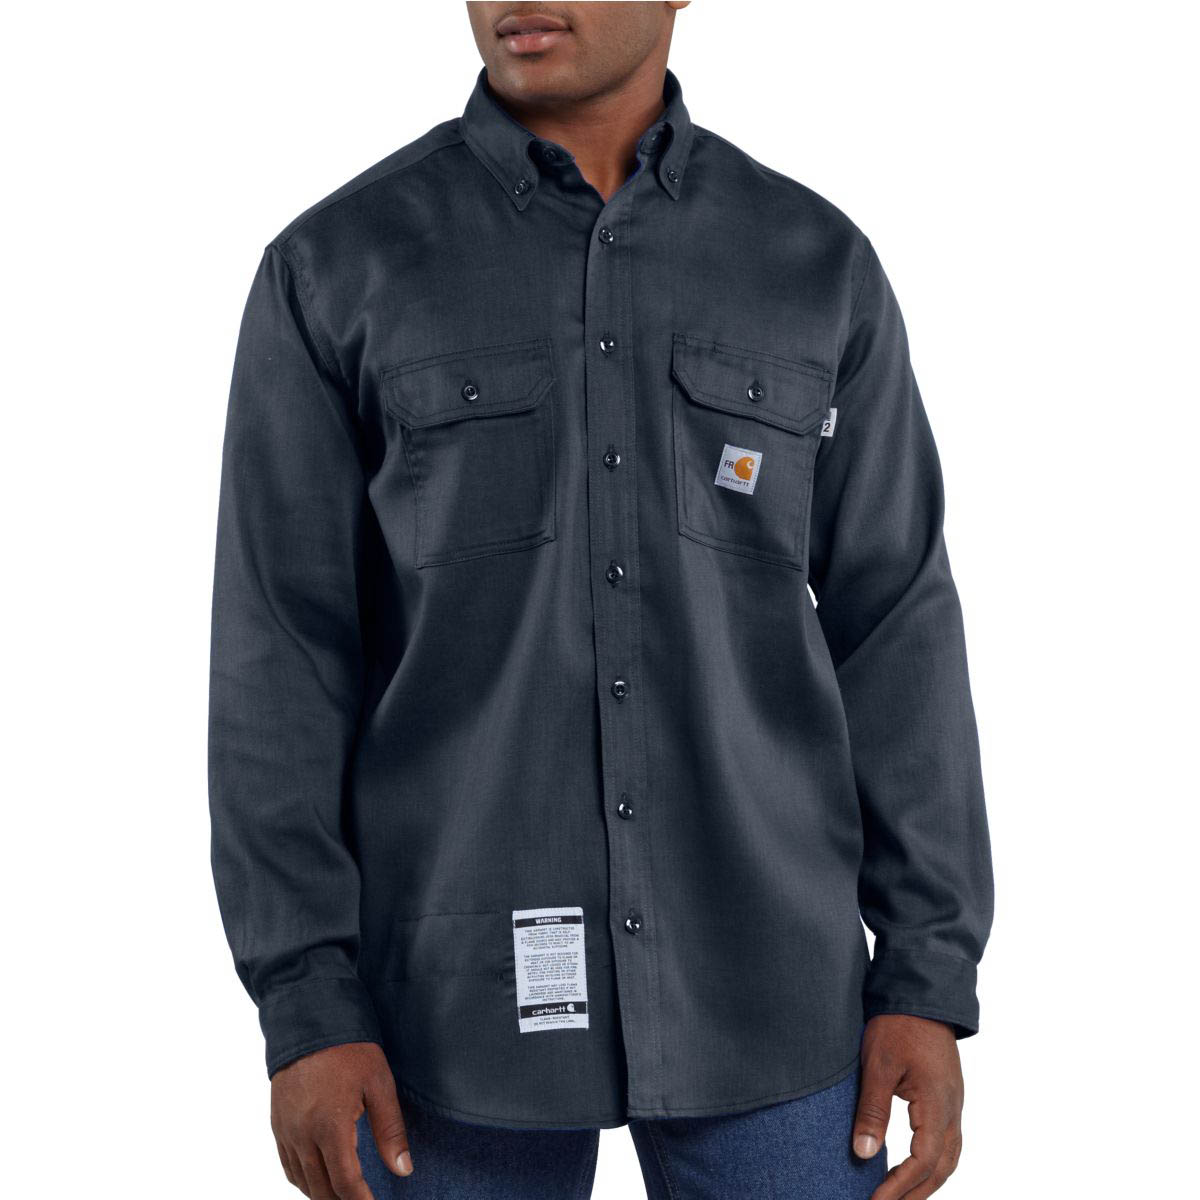 Carhartt Men's Flame Resistant Work Dry Lightweight Twill Shirt